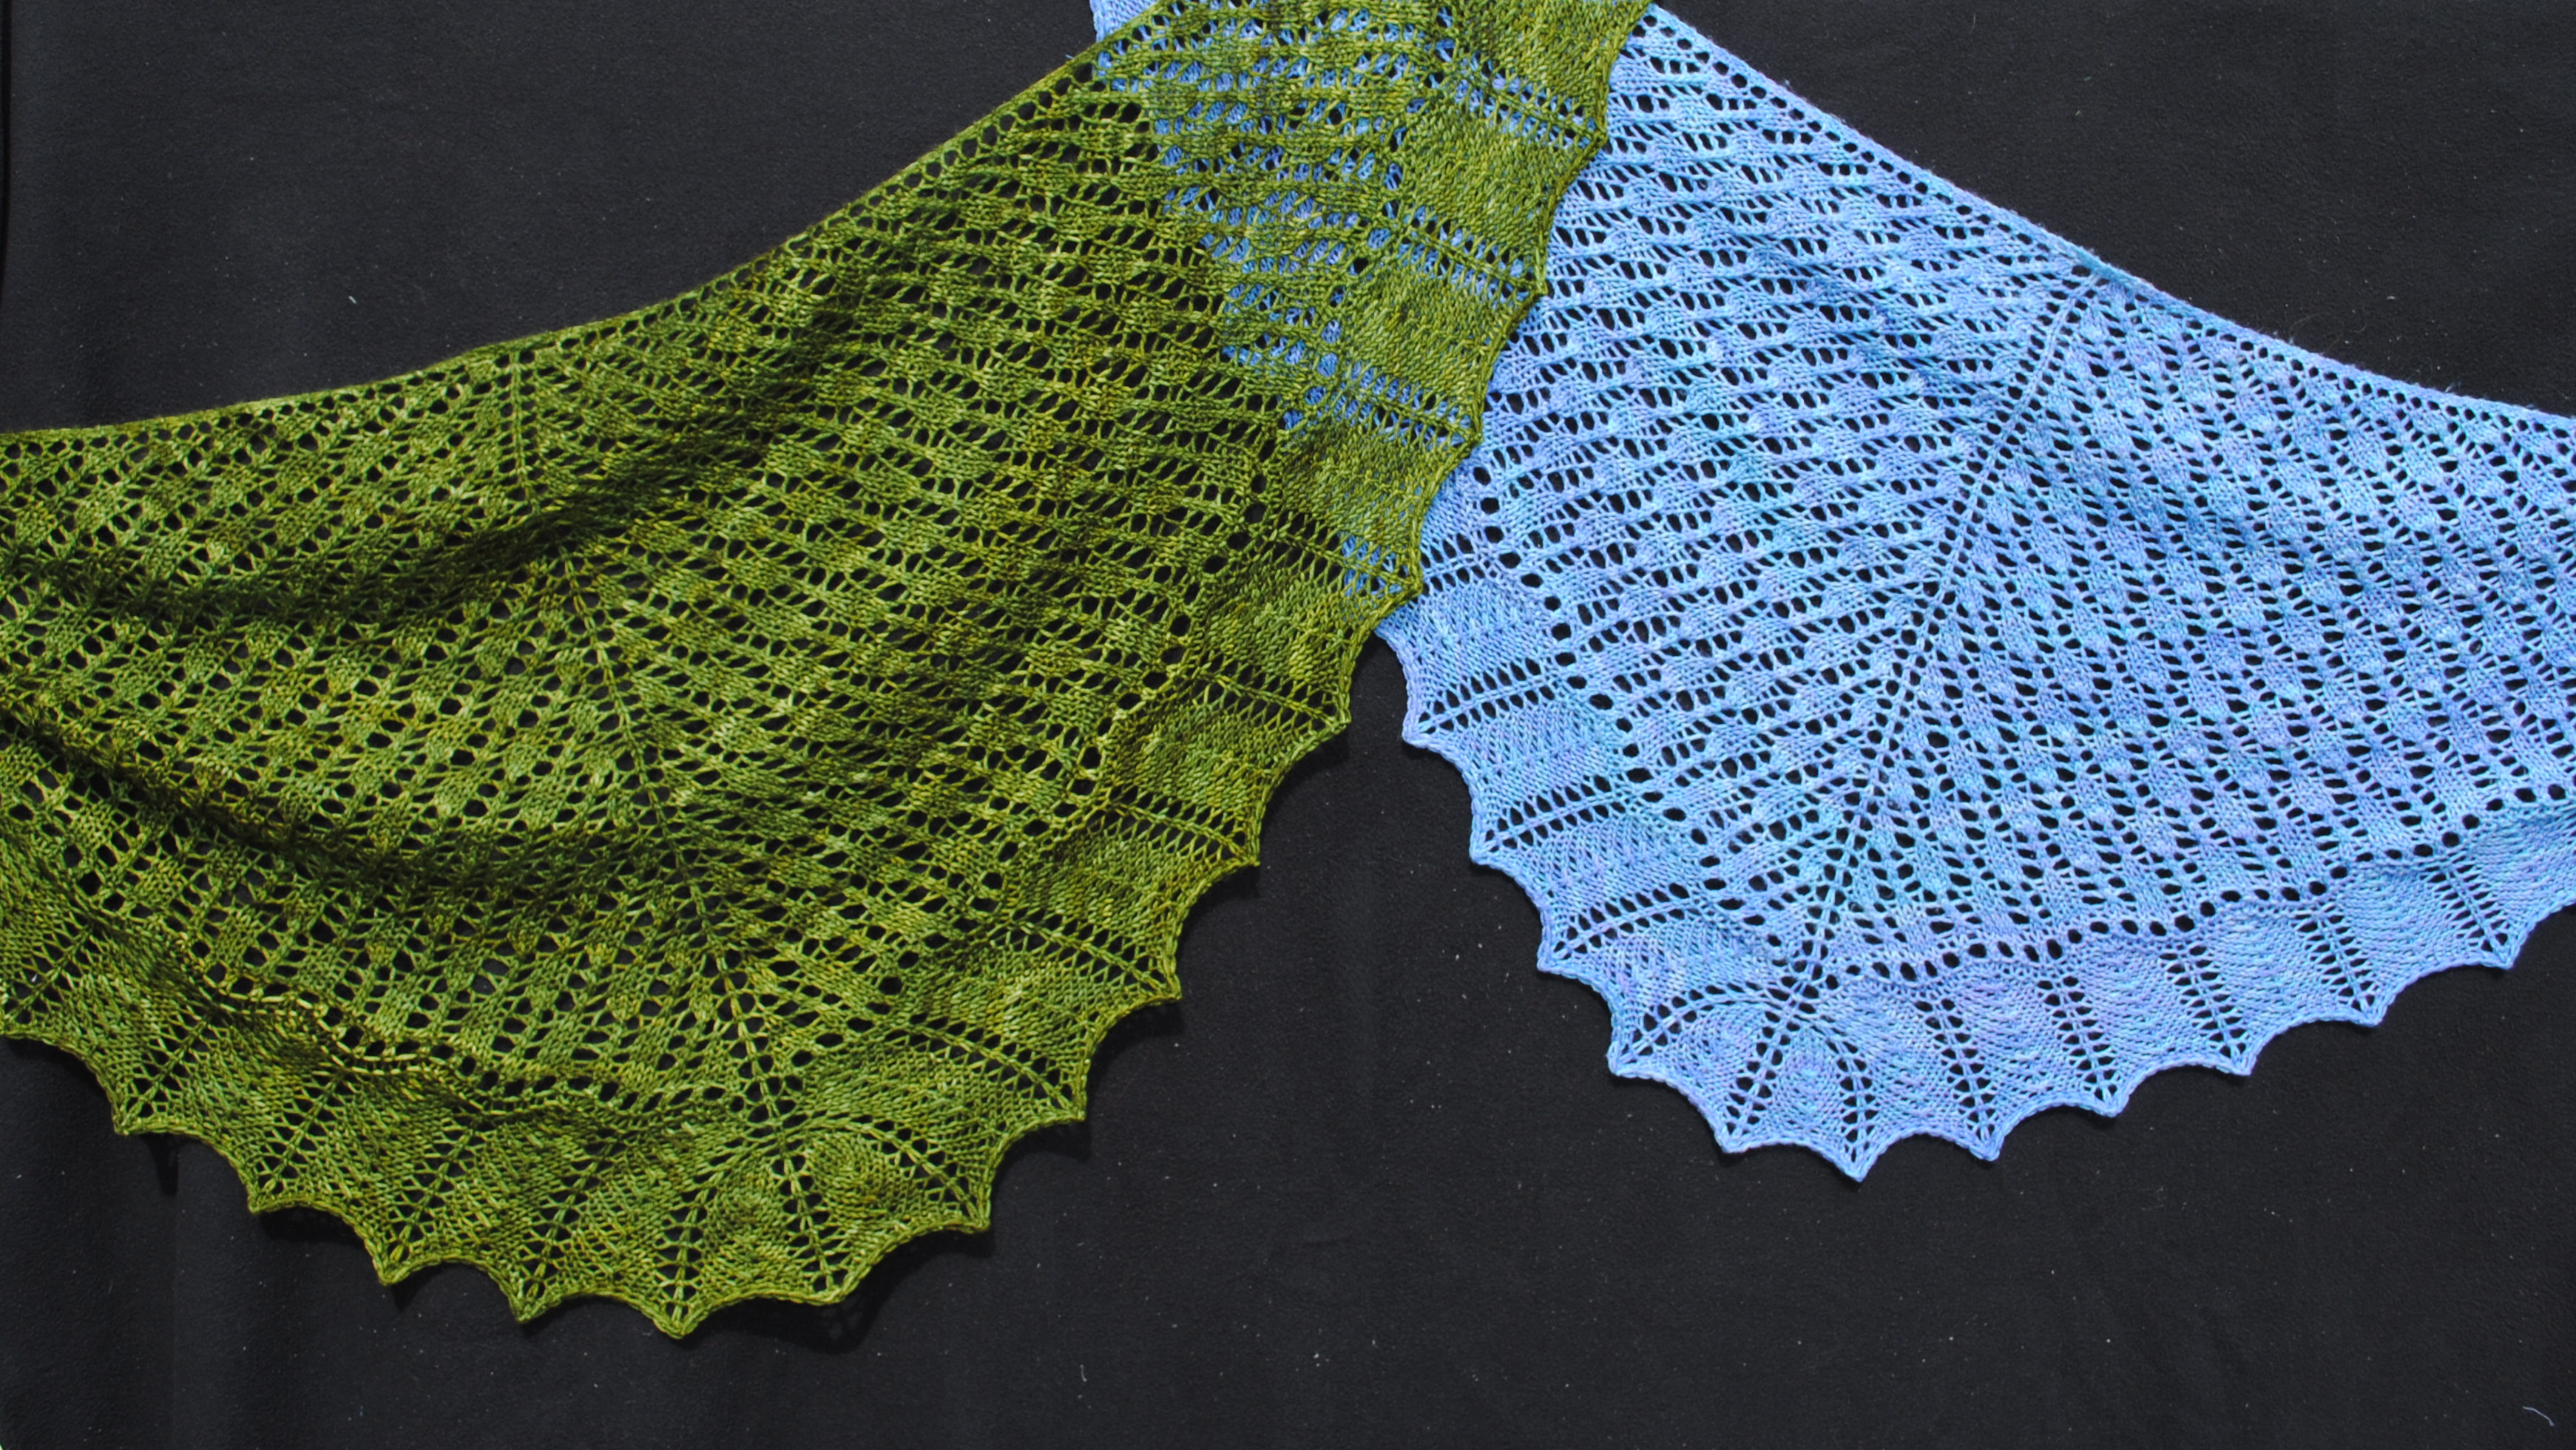 Crochet Summer Wrap and Matching Kerchief | Free Crochet Pattern